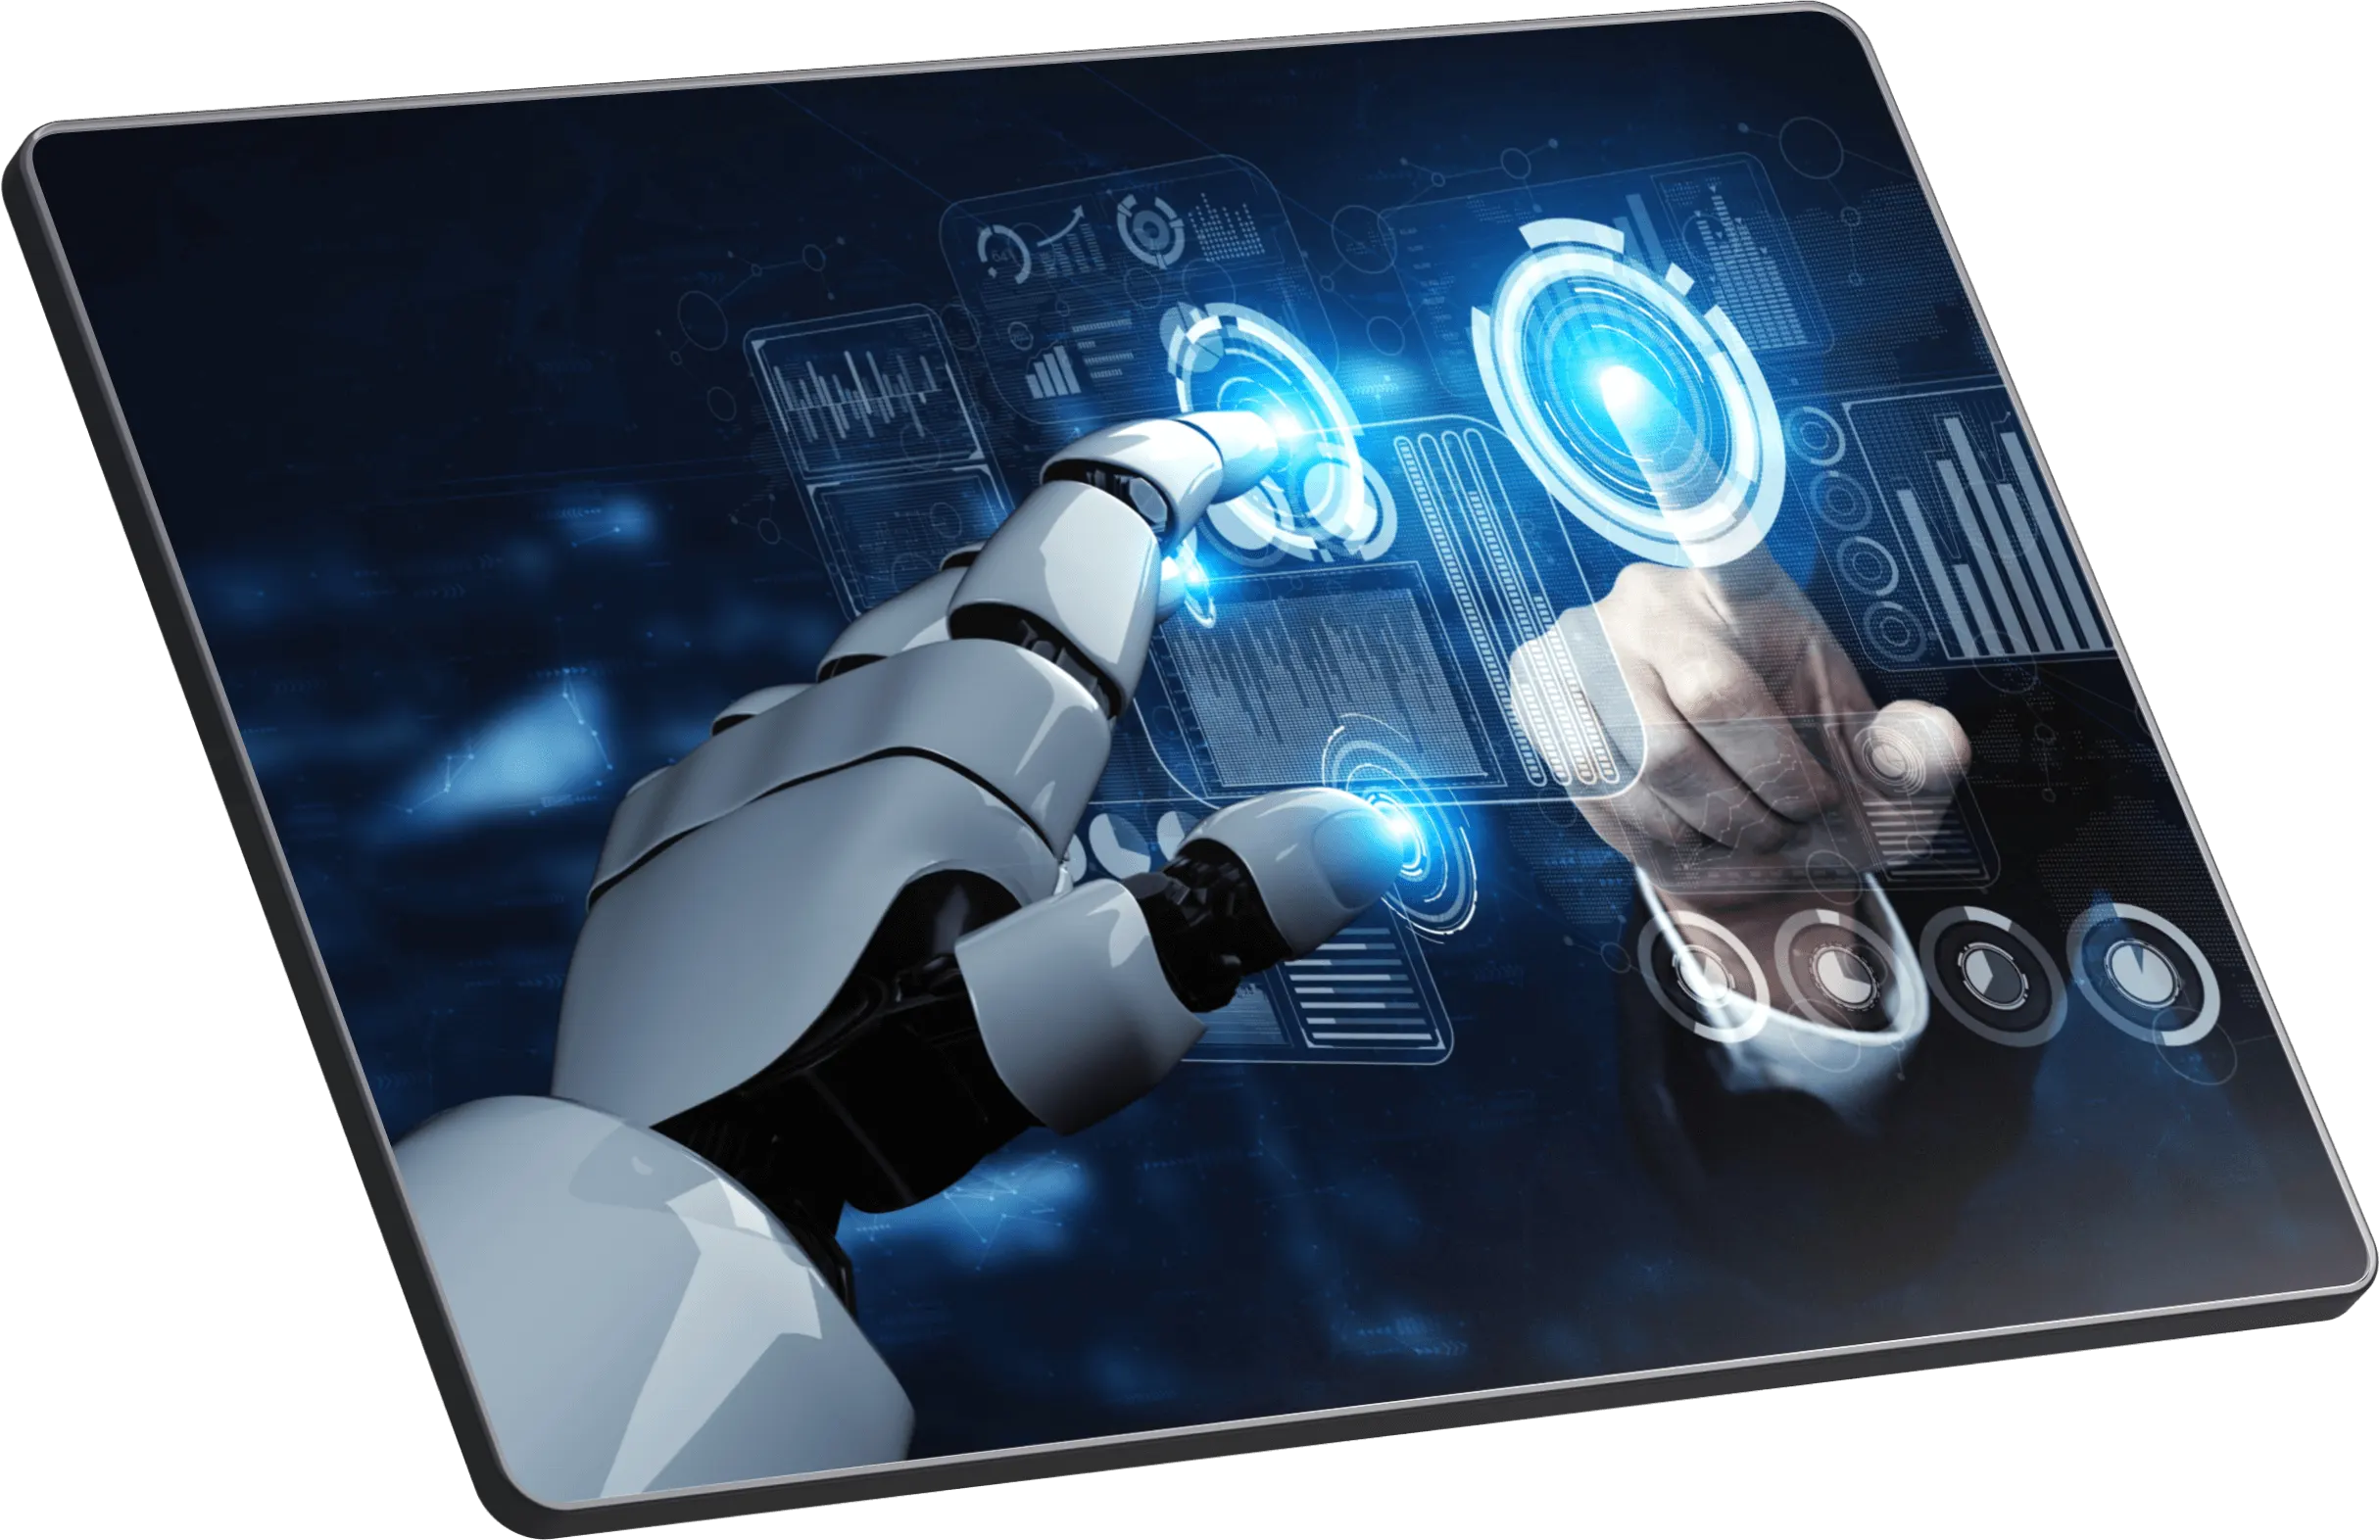 ACF SA ES Mano de robot y mano humana tocando una pantalla de ipad